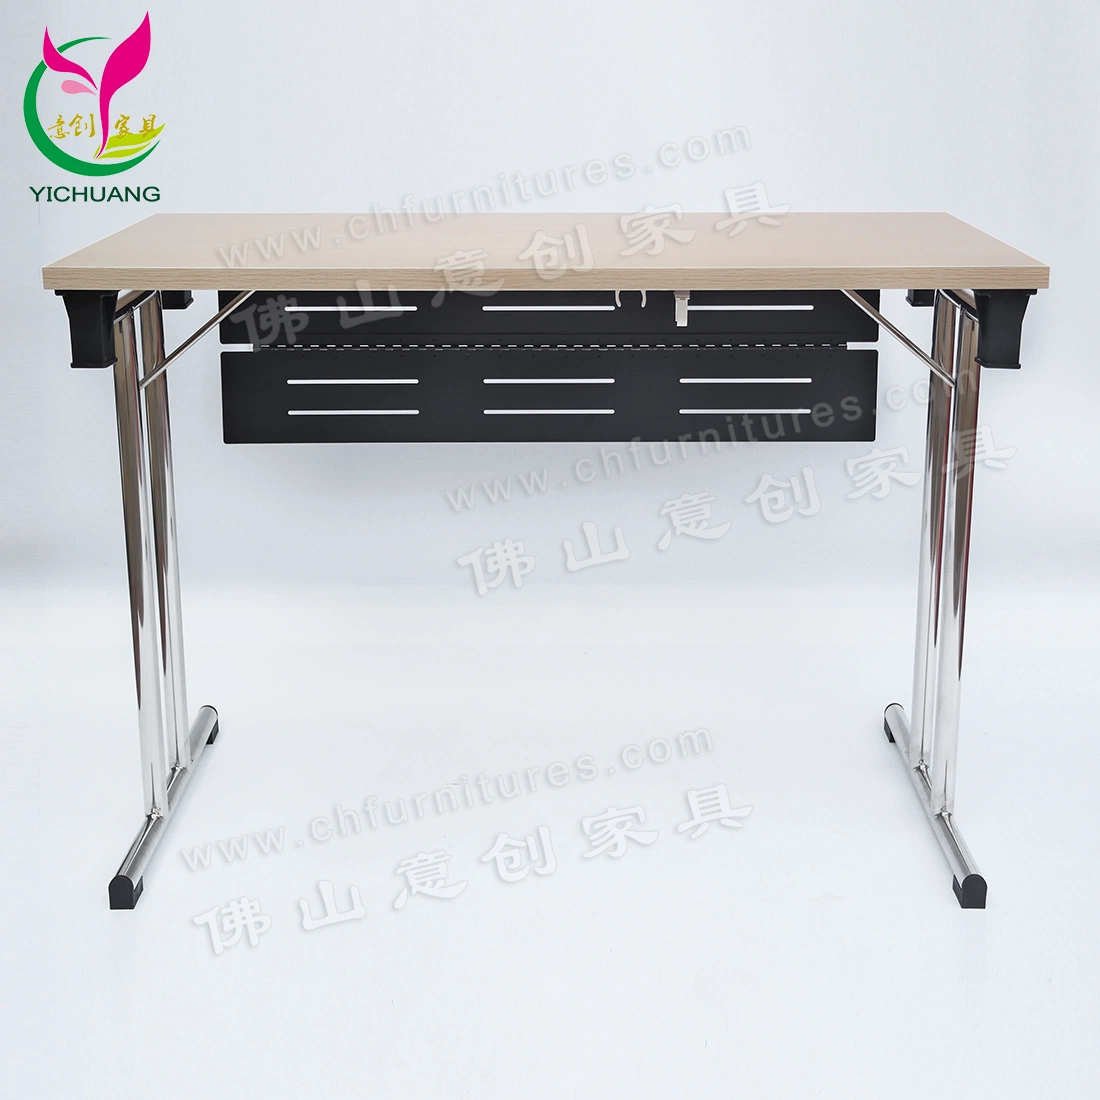 YC-T188-03 kommerzieller Edelstahl-faltbarer Konferenztisch mit Melamin Holzplatte